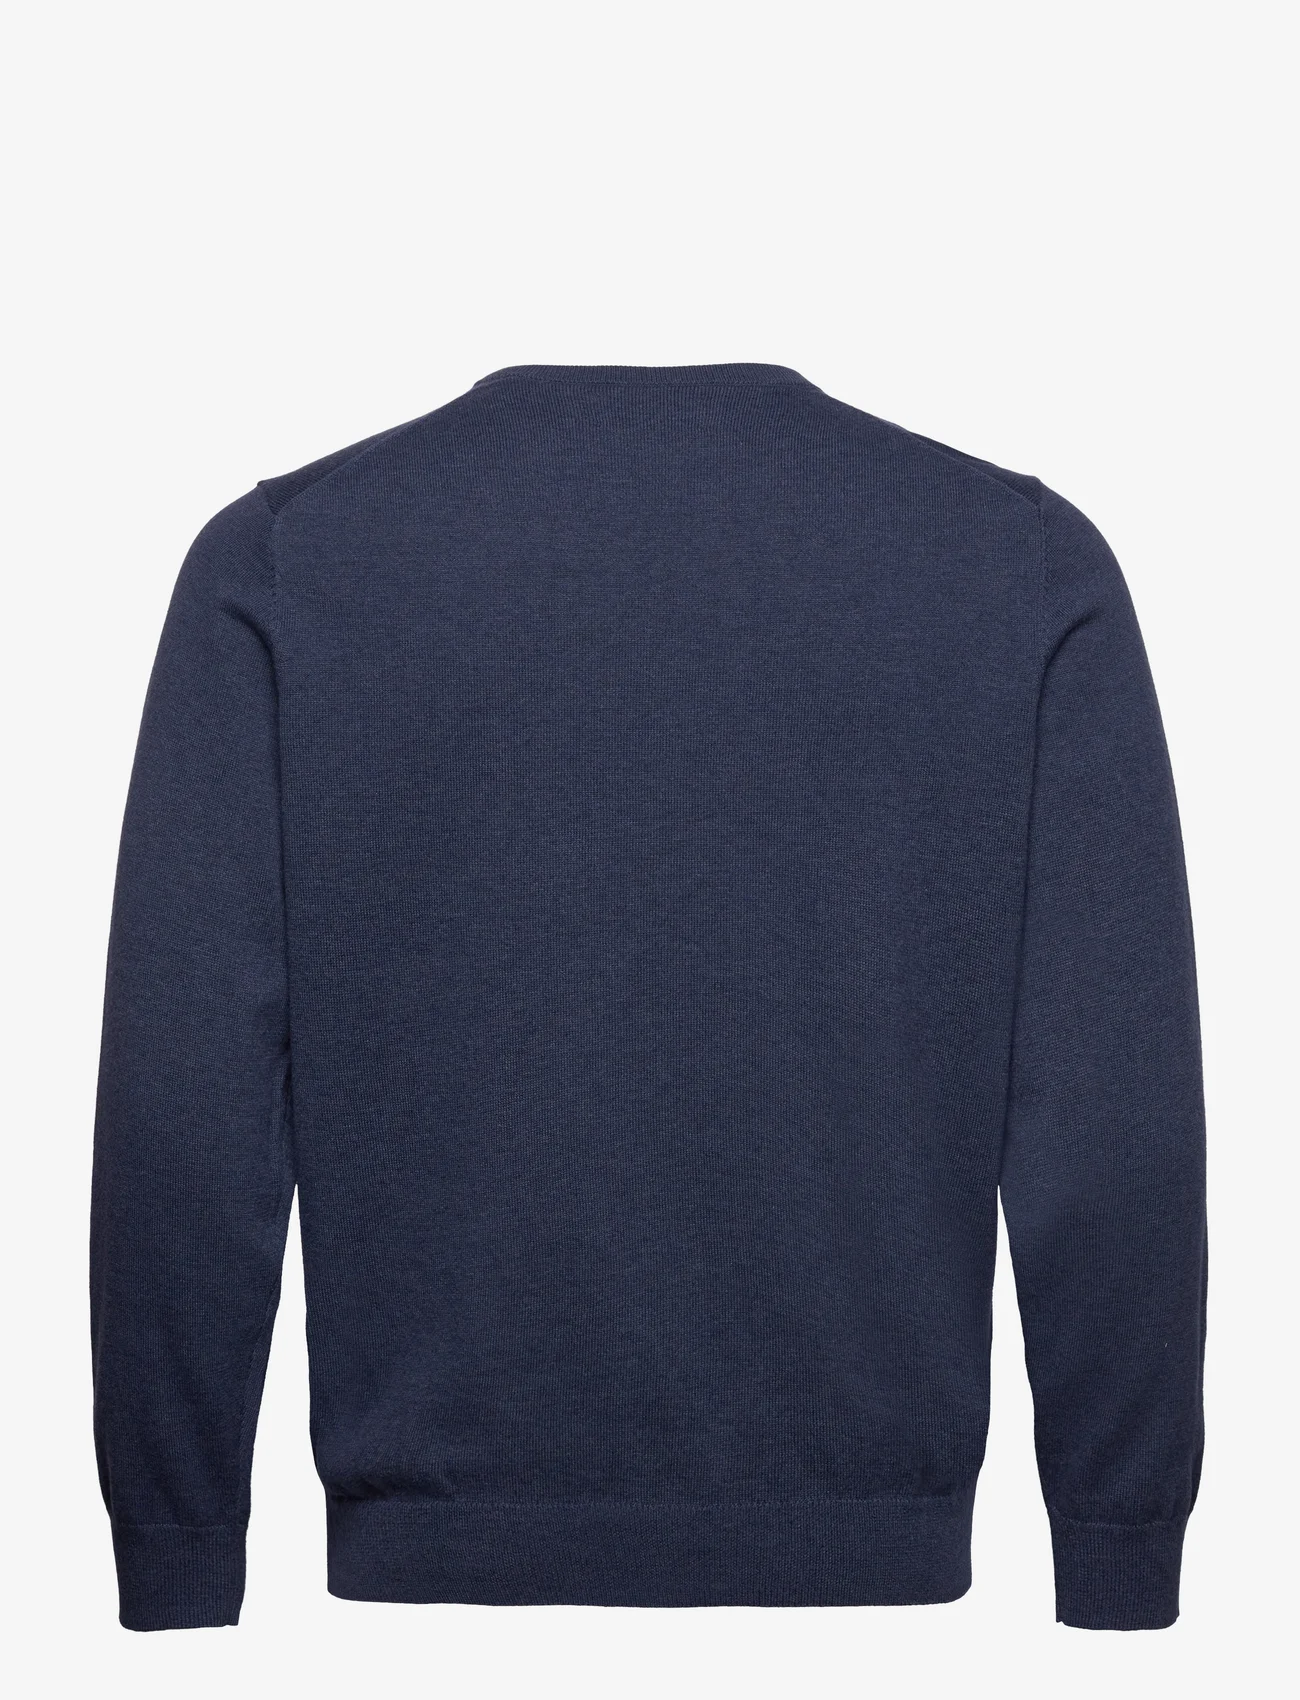 GANT - CLASSIC COTTON V-NECK - swetry w serek - dark jeansblue melange - 1